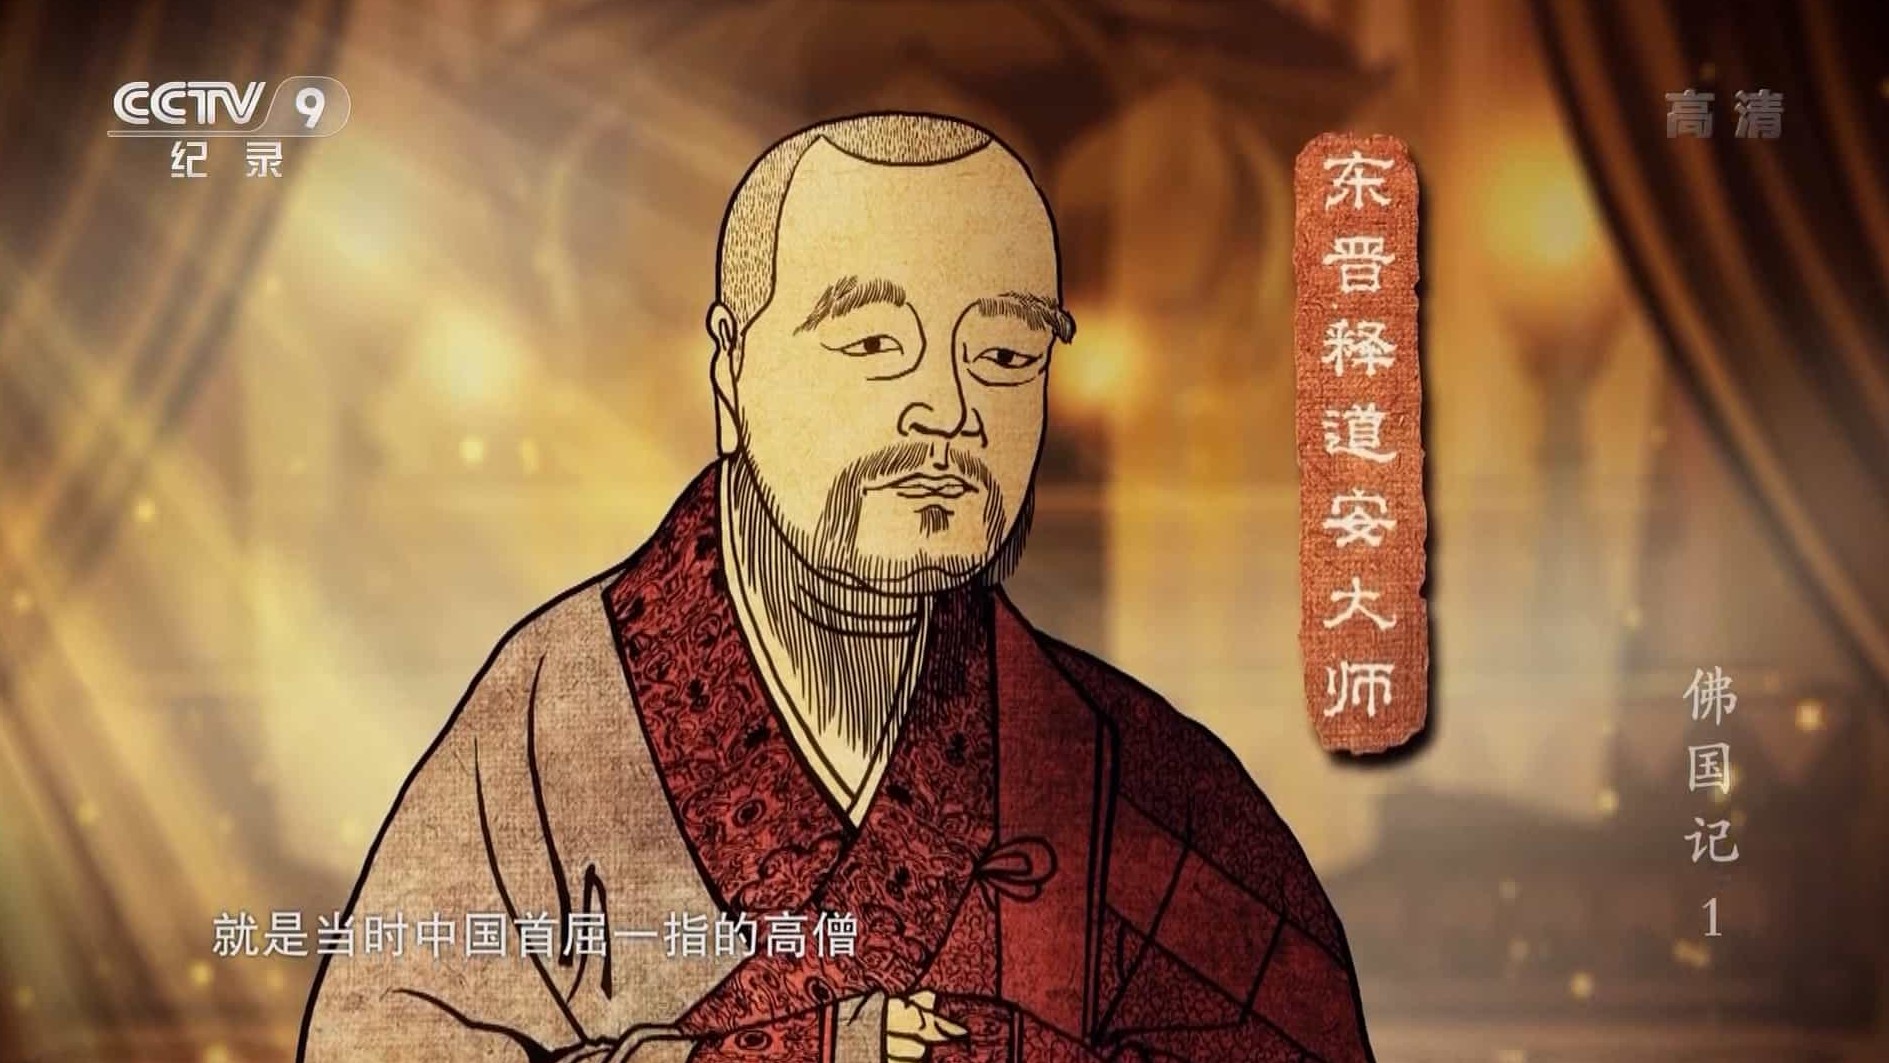  关于佛教历史的纪录片《佛国记:法显西行》全4集 国语中字 1080P高清下载